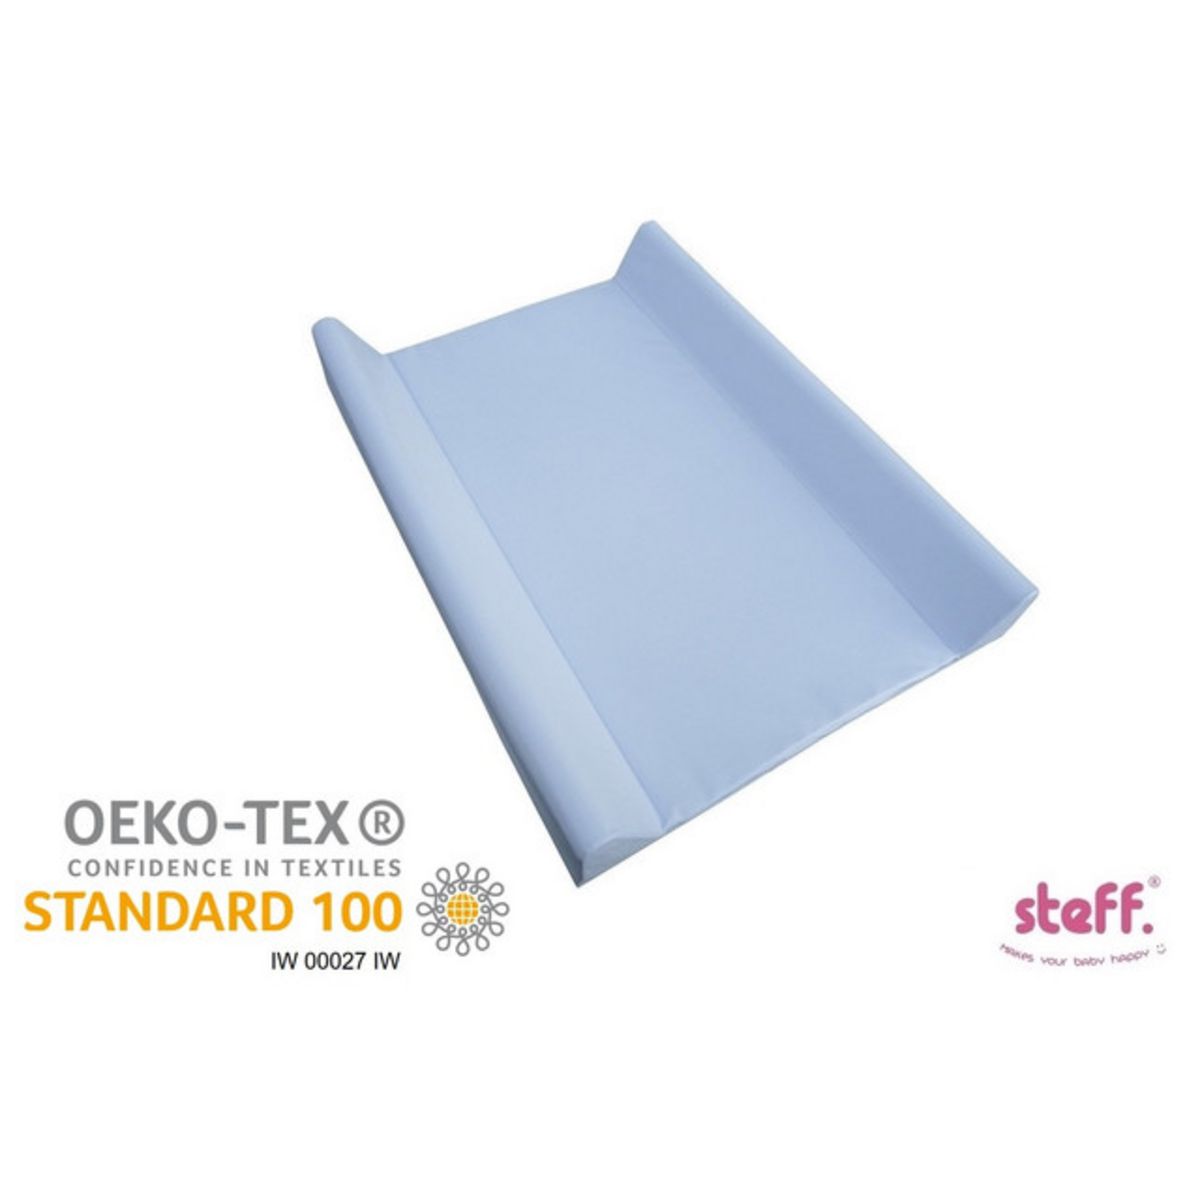  Steff - Matelas à langer avec rebords - 70x50 cm - Bleu - Label de qualité OEKO-TEX standard 100